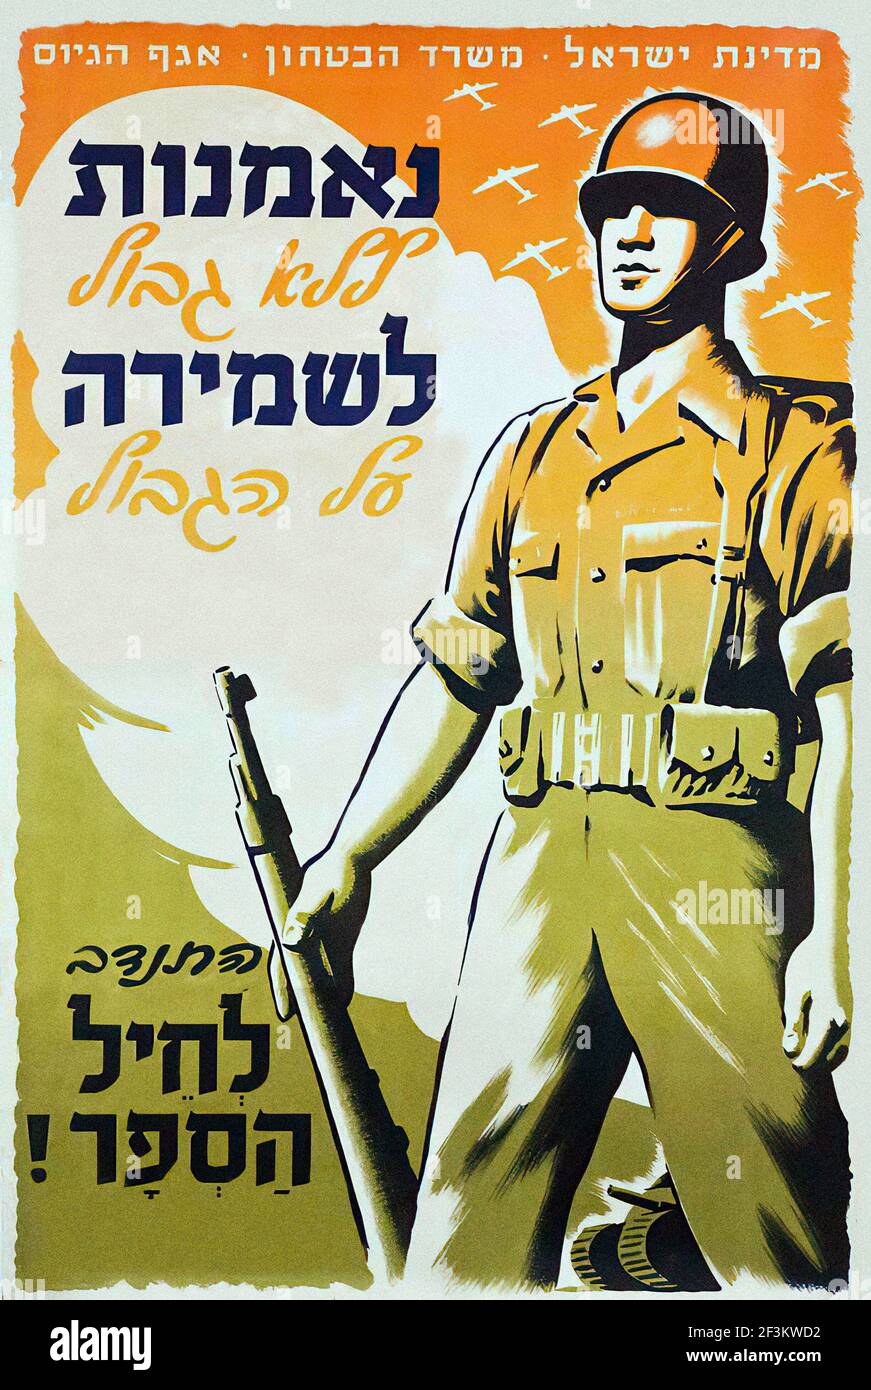 Affiche de propagande de recrutement israélienne vintage du Ministère de la défense. Rejoignez les forces frontalières ! Israël. années 1950 Banque D'Images